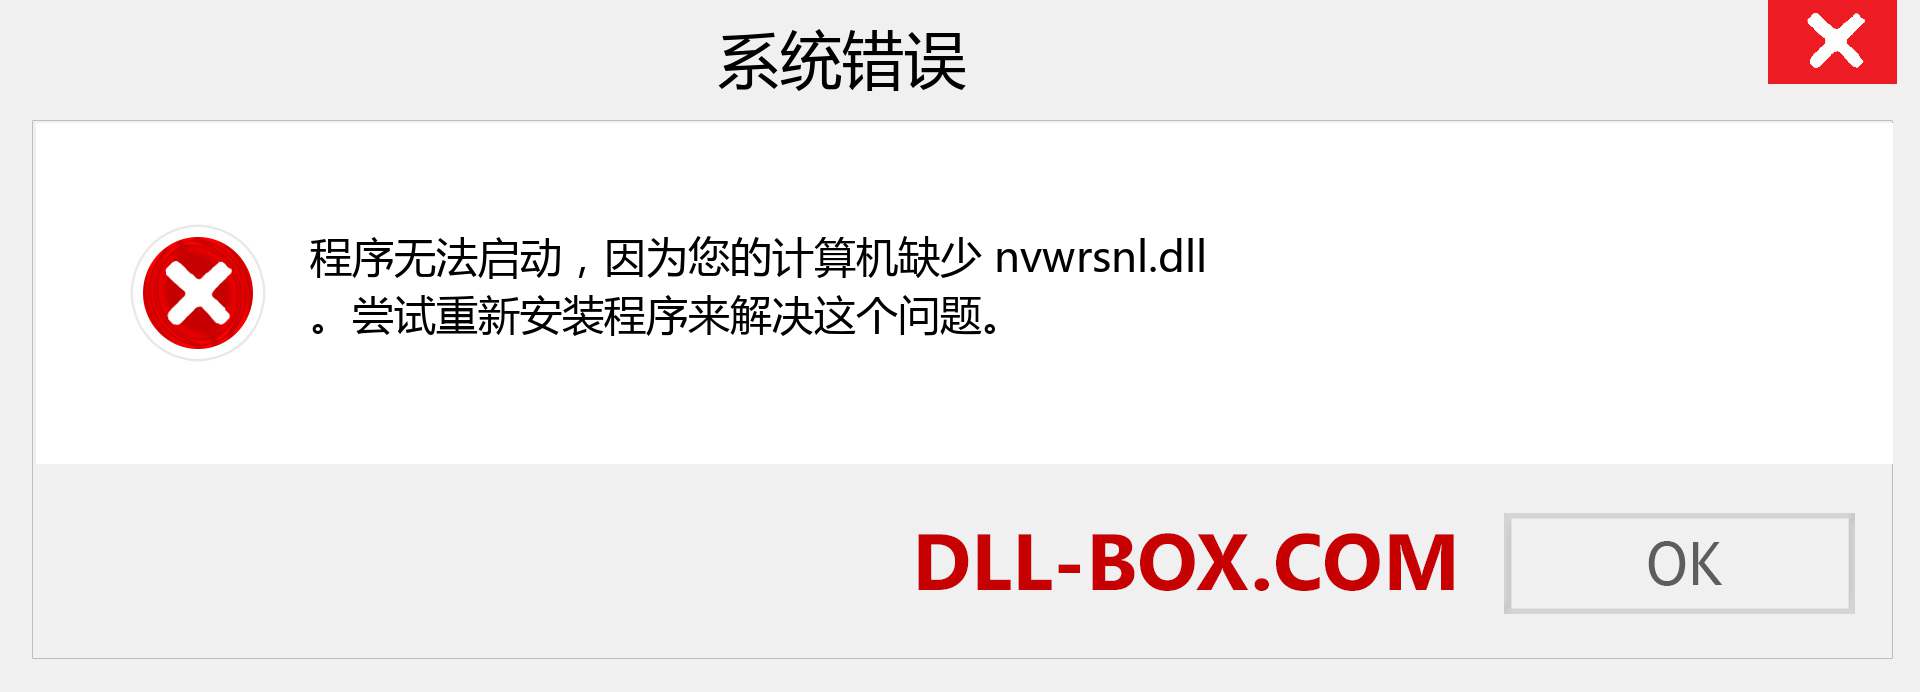 nvwrsnl.dll 文件丢失？。 适用于 Windows 7、8、10 的下载 - 修复 Windows、照片、图像上的 nvwrsnl dll 丢失错误